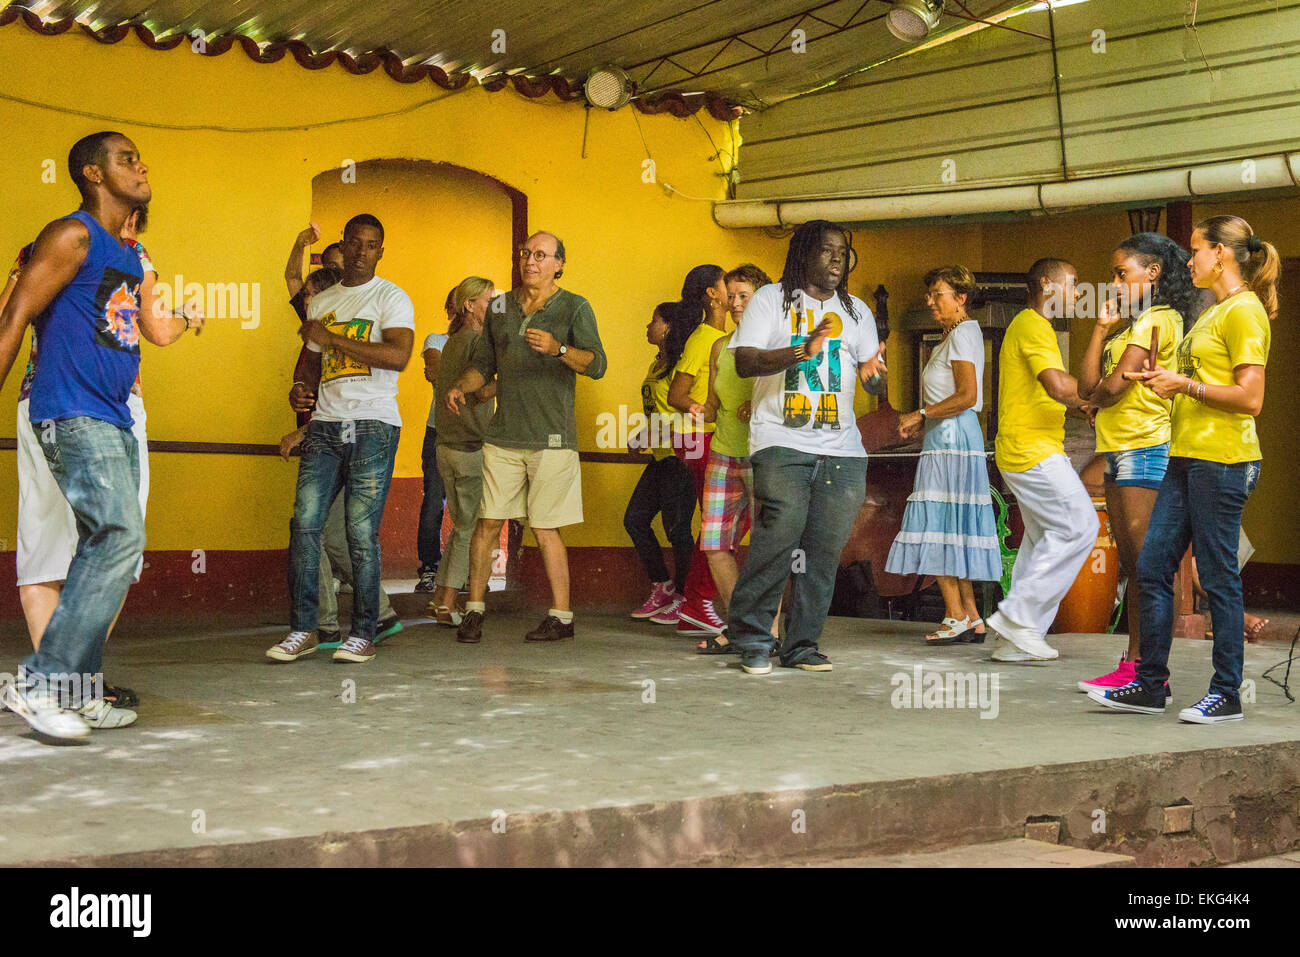 Cuba Trinidad école salsa danse Danse pour les touristes leçon danseur danseurs Banque D'Images